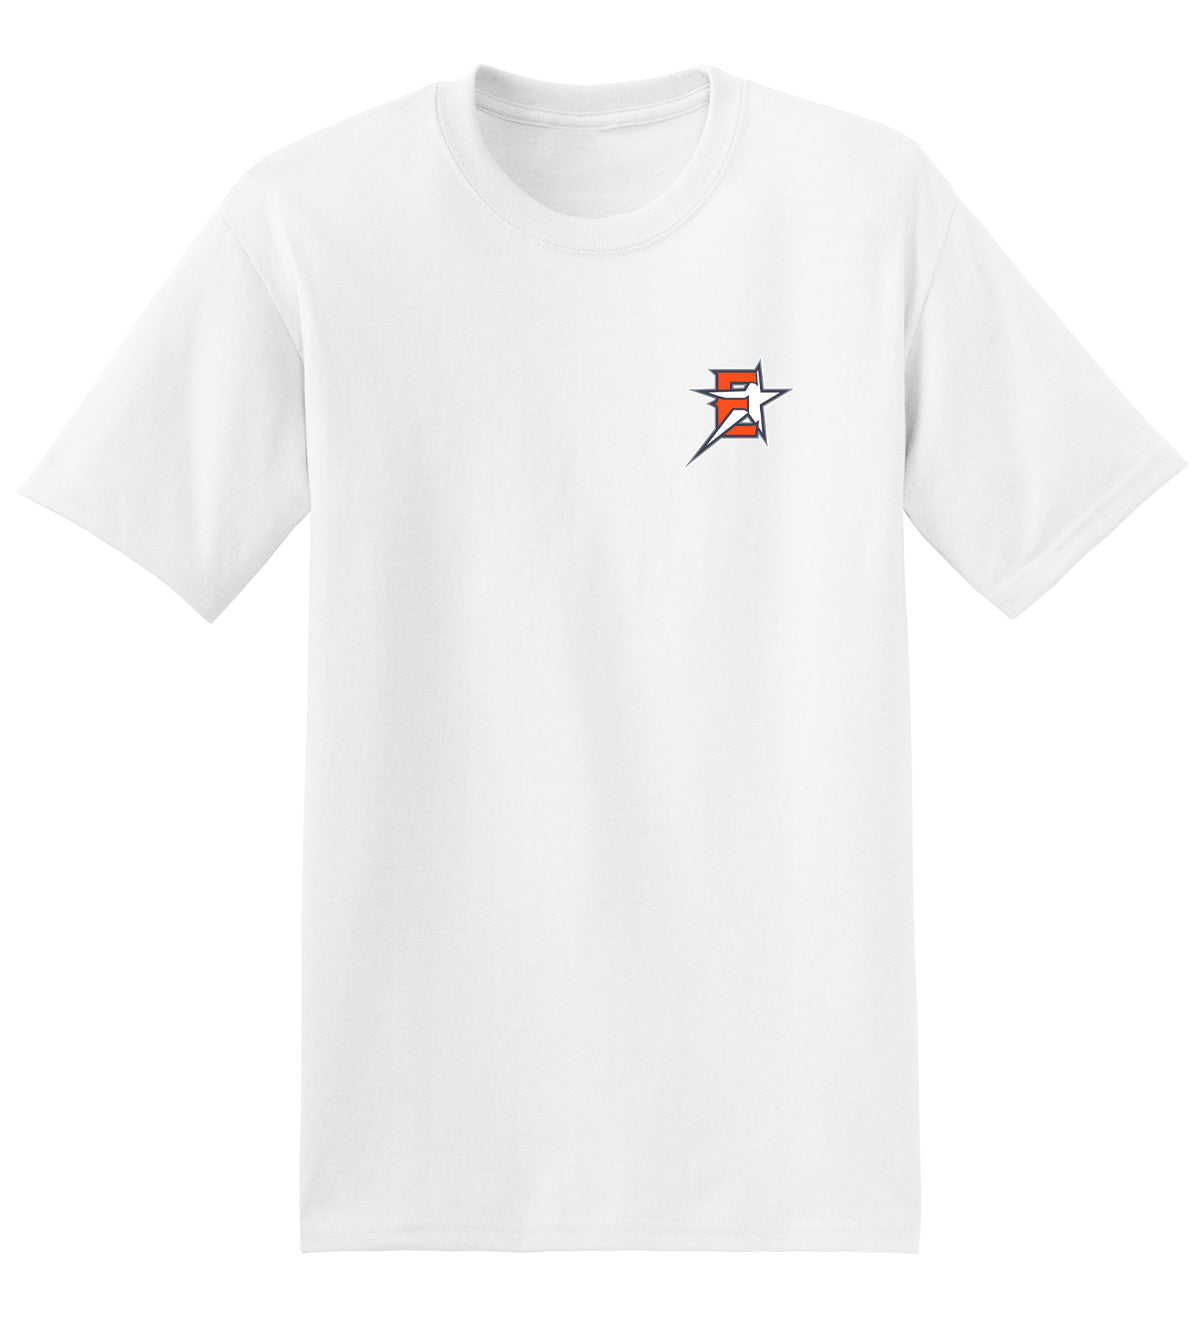 2019 Eastvale Girl's Softball T-Shirt